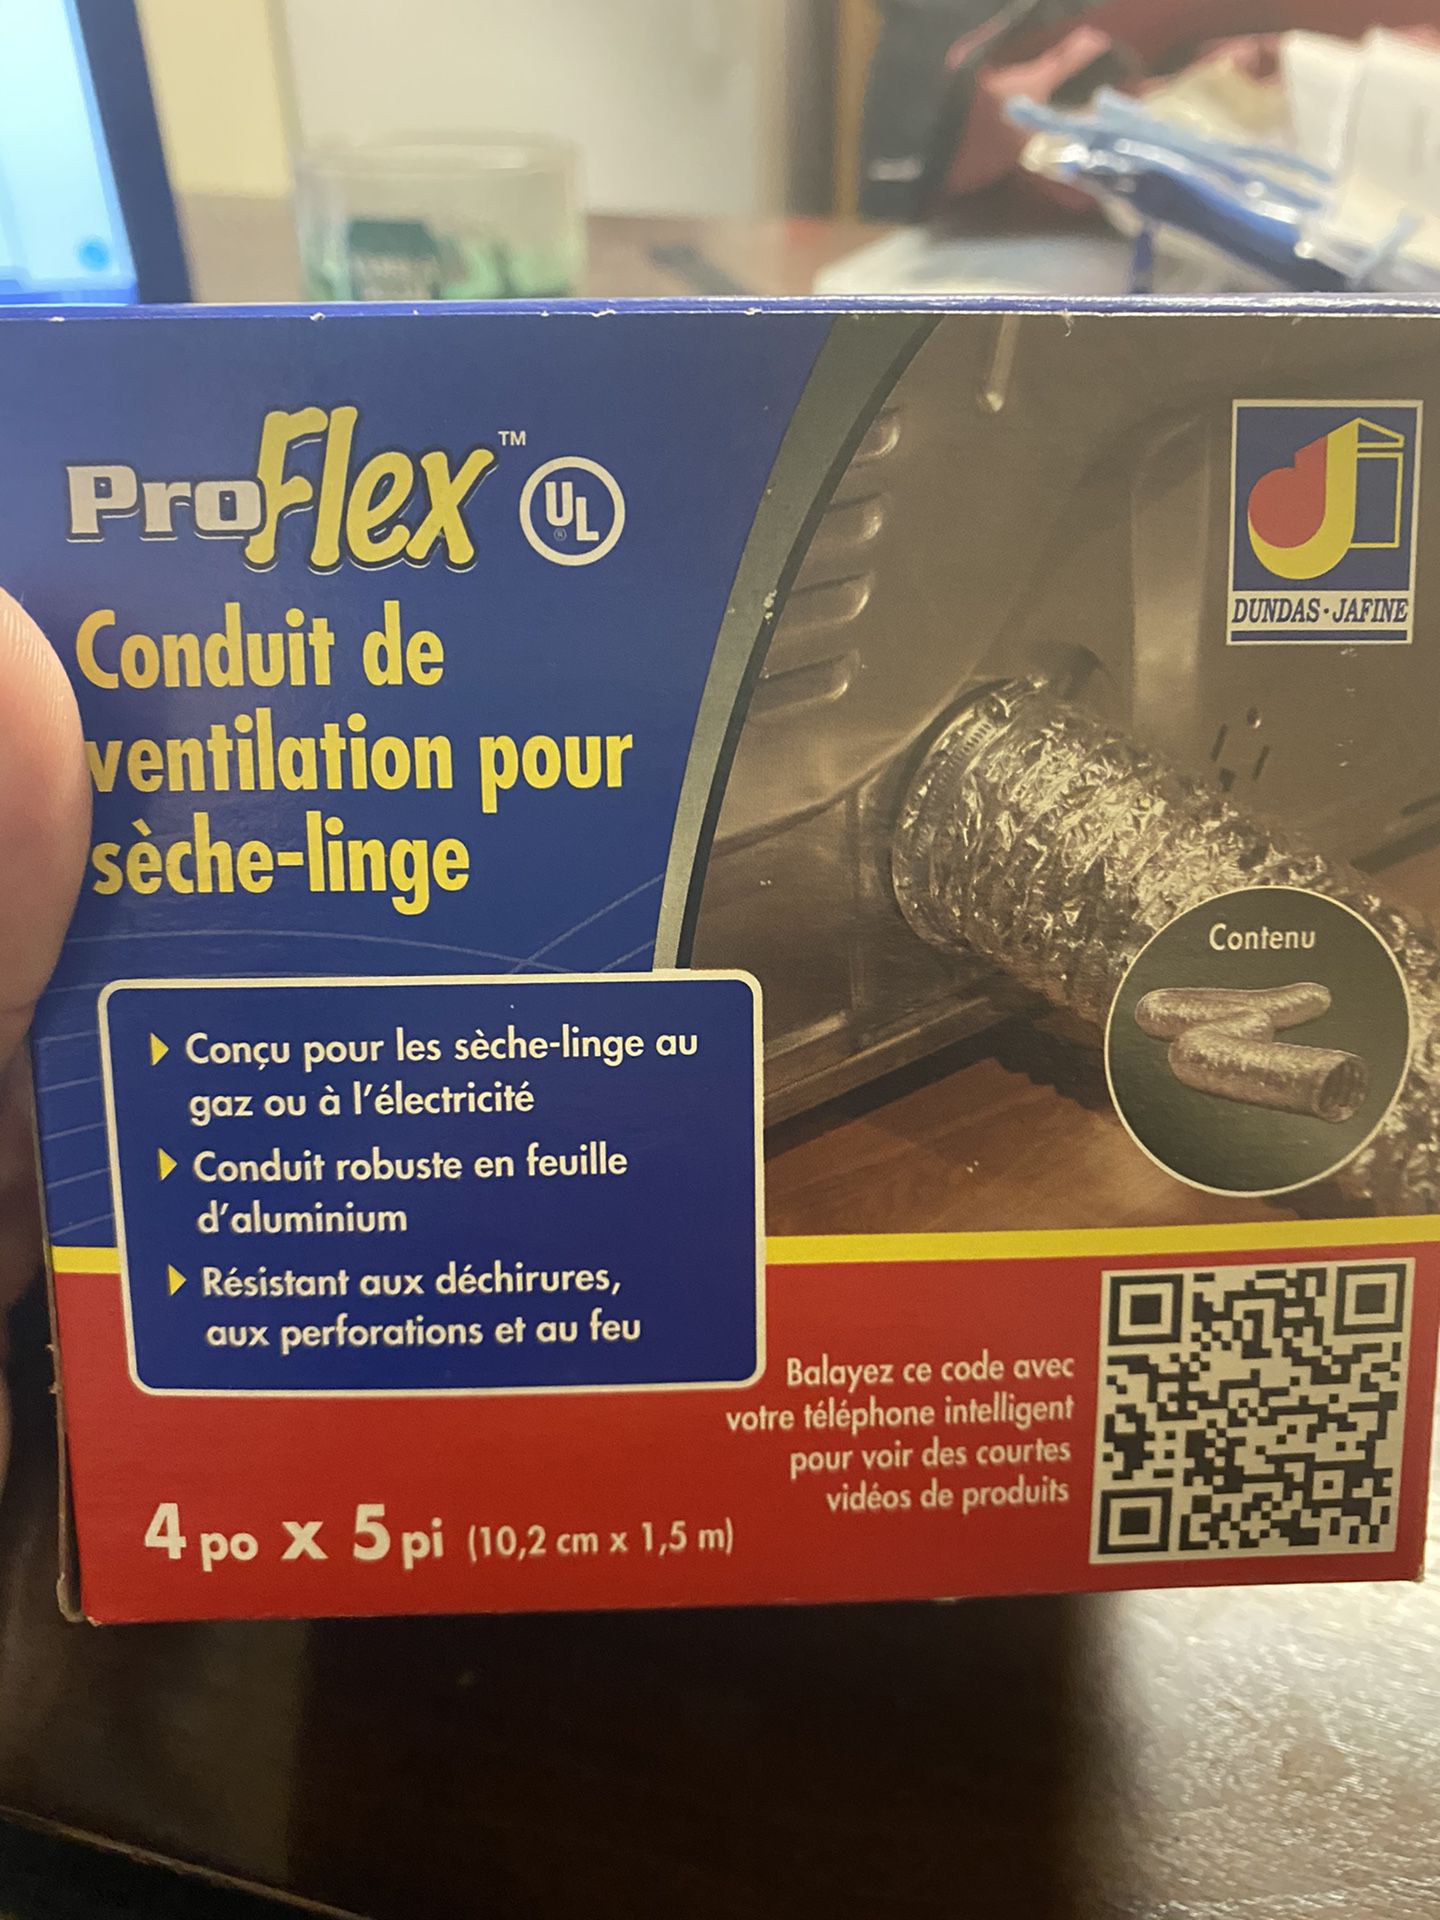 ProFlex conduit de ventilation pour sèche-linge